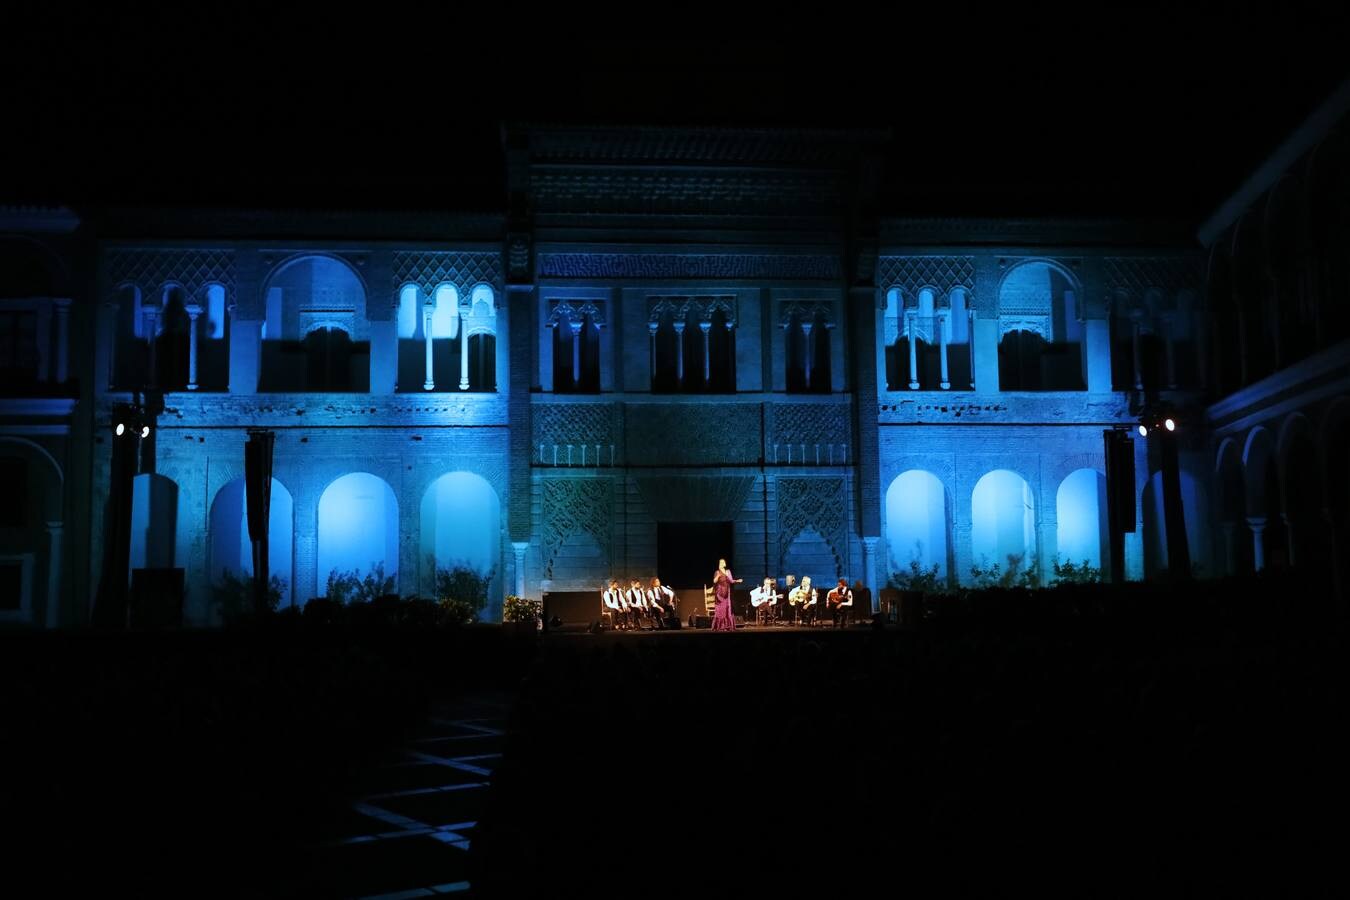 En imágenes, el concierto de la cantaora Argentina en la Bienal de Flamenco de Sevilla 2018